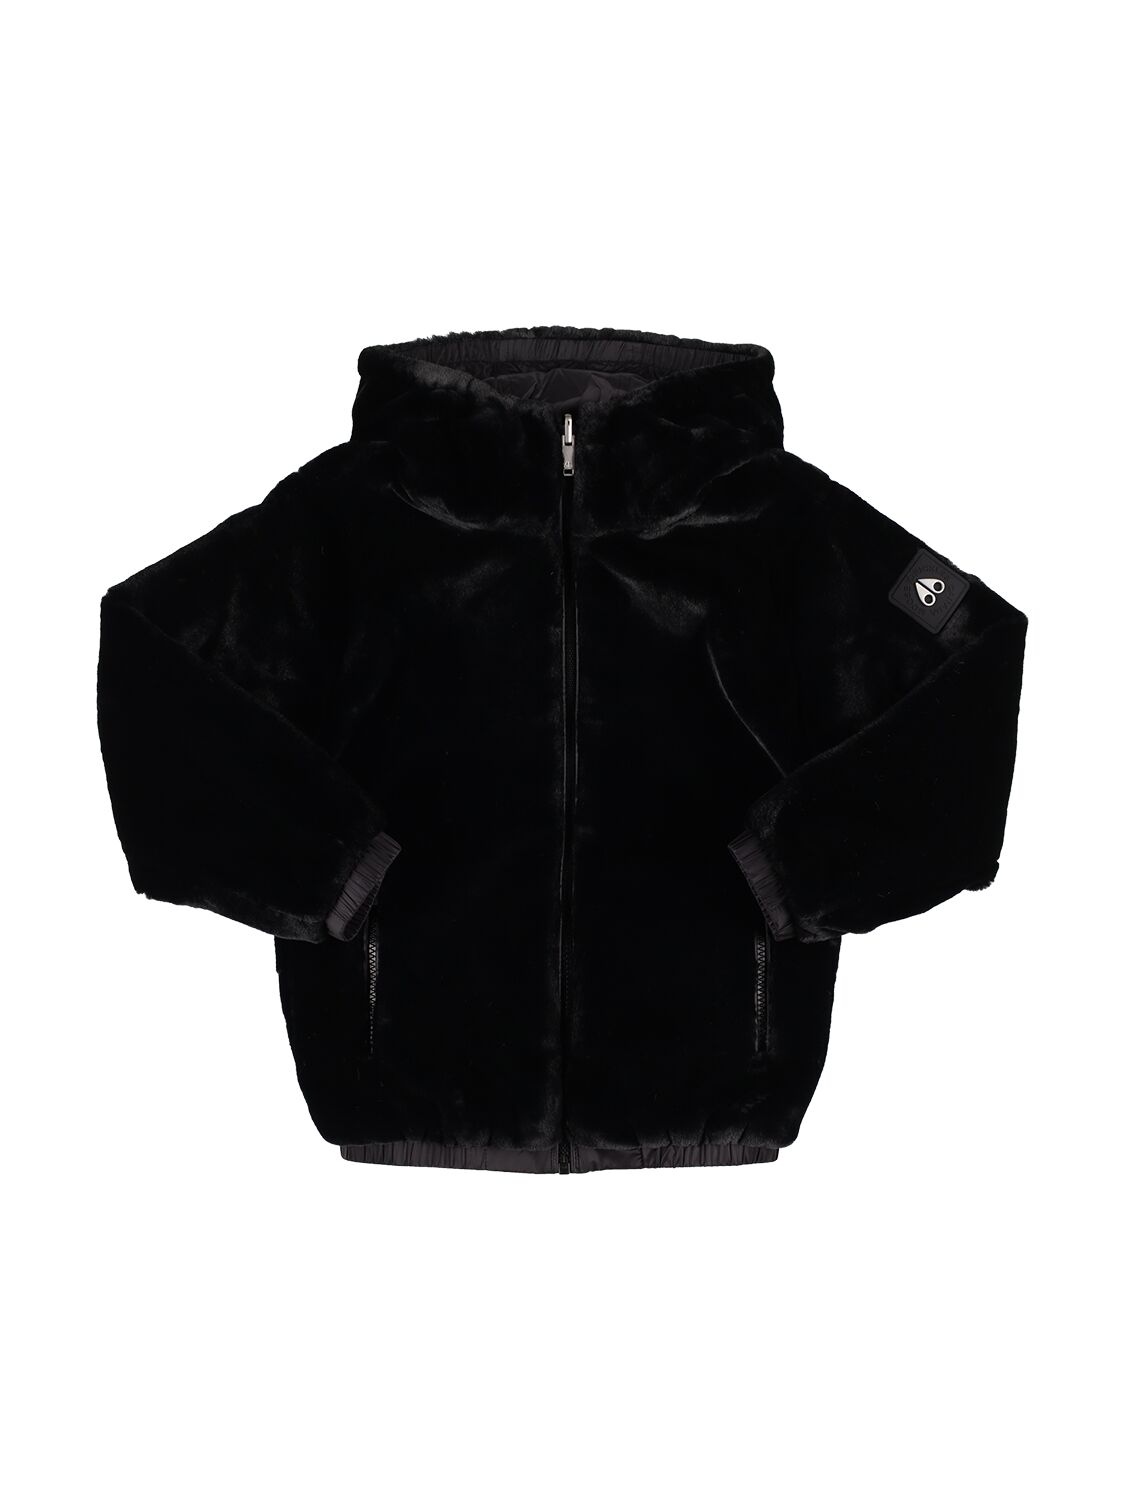 Moose Knuckles Babies' Reversible Faux Fur & Nylon Jacket In Black